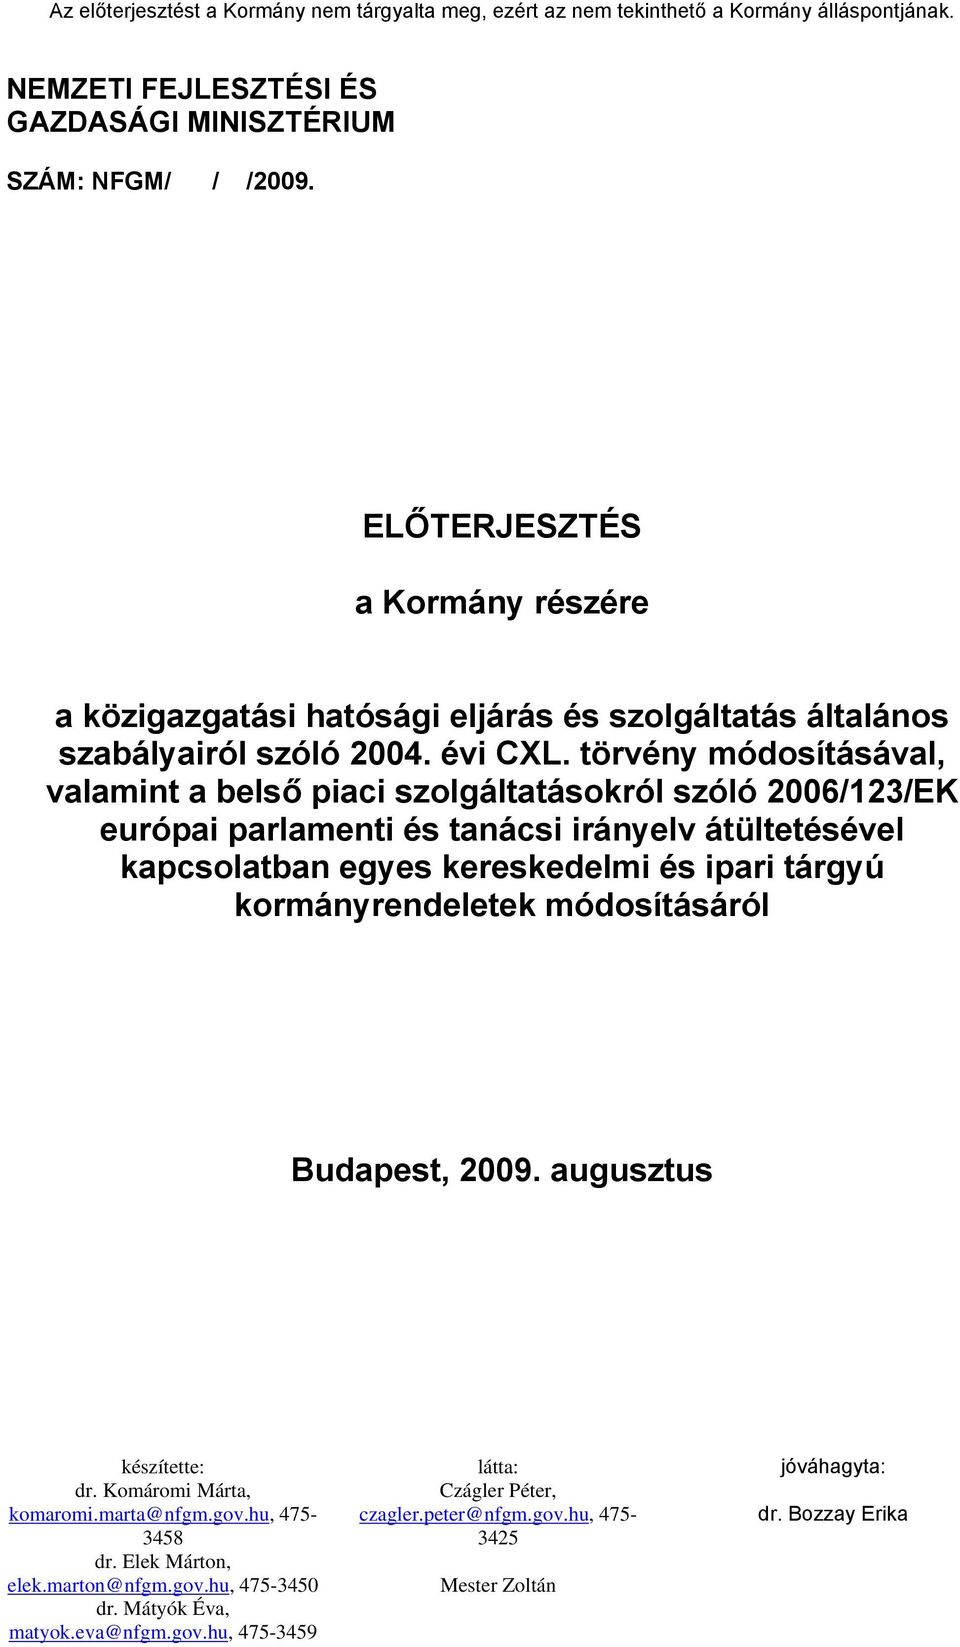 törvény módosításával, valamint a belső piaci szolgáltatásokról szóló 2006/123/EK európai parlamenti és tanácsi irányelv